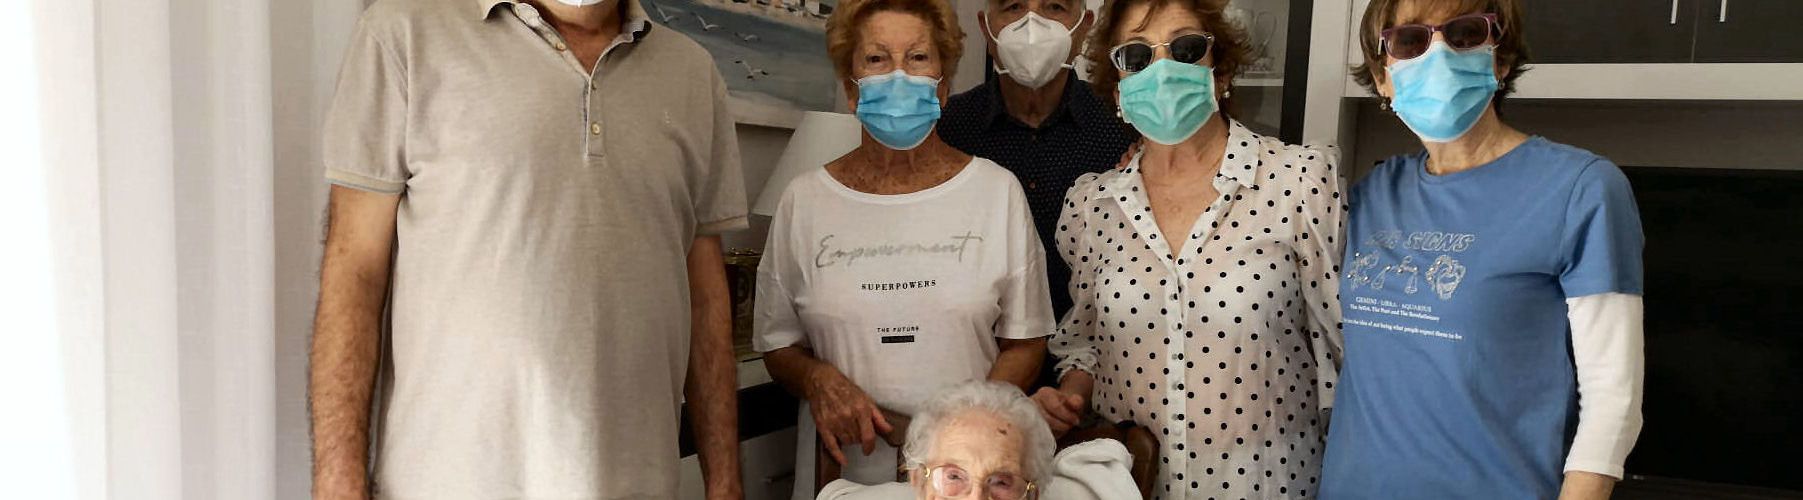 Estefania López de Vinaròs arriba als 105 anys